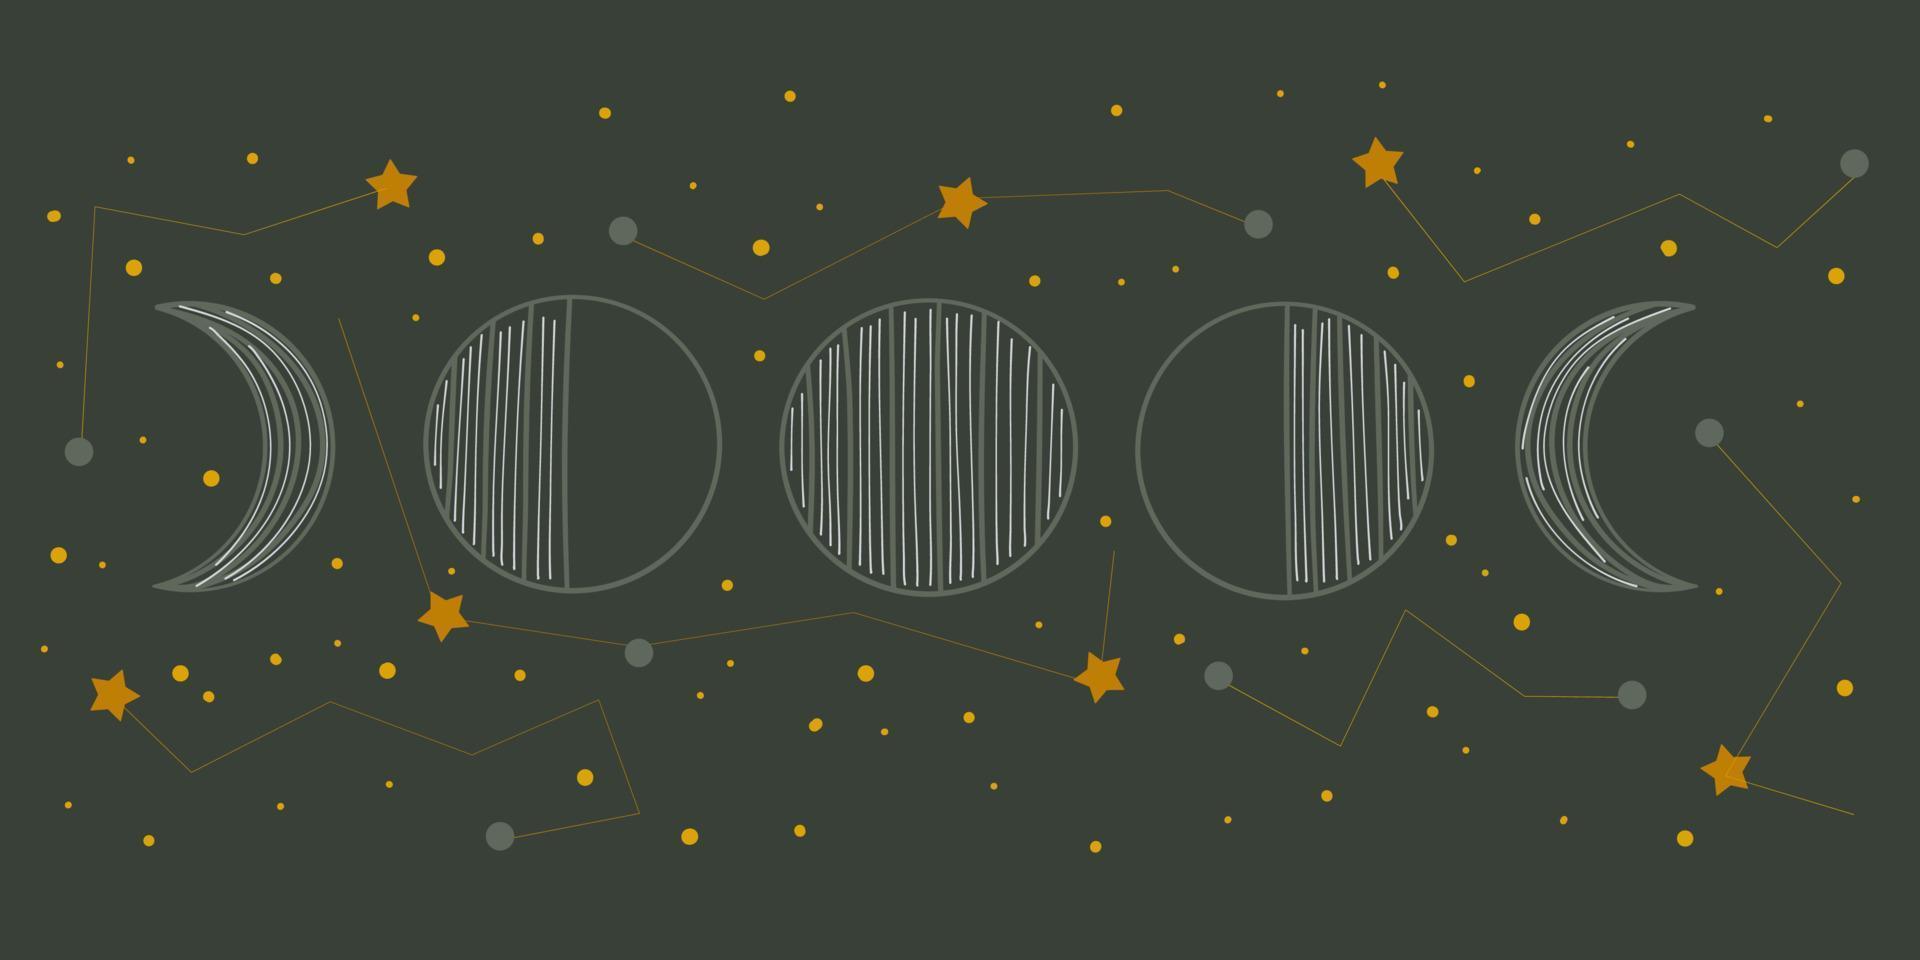 Mondphasen mit Sternbildern im Vintage-Stil auf dunklem Hintergrund. wechselnder Mond mit Sternen am Himmel. spirituelle himmlische Astrologie. flache vektorillustrationsfahne vektor